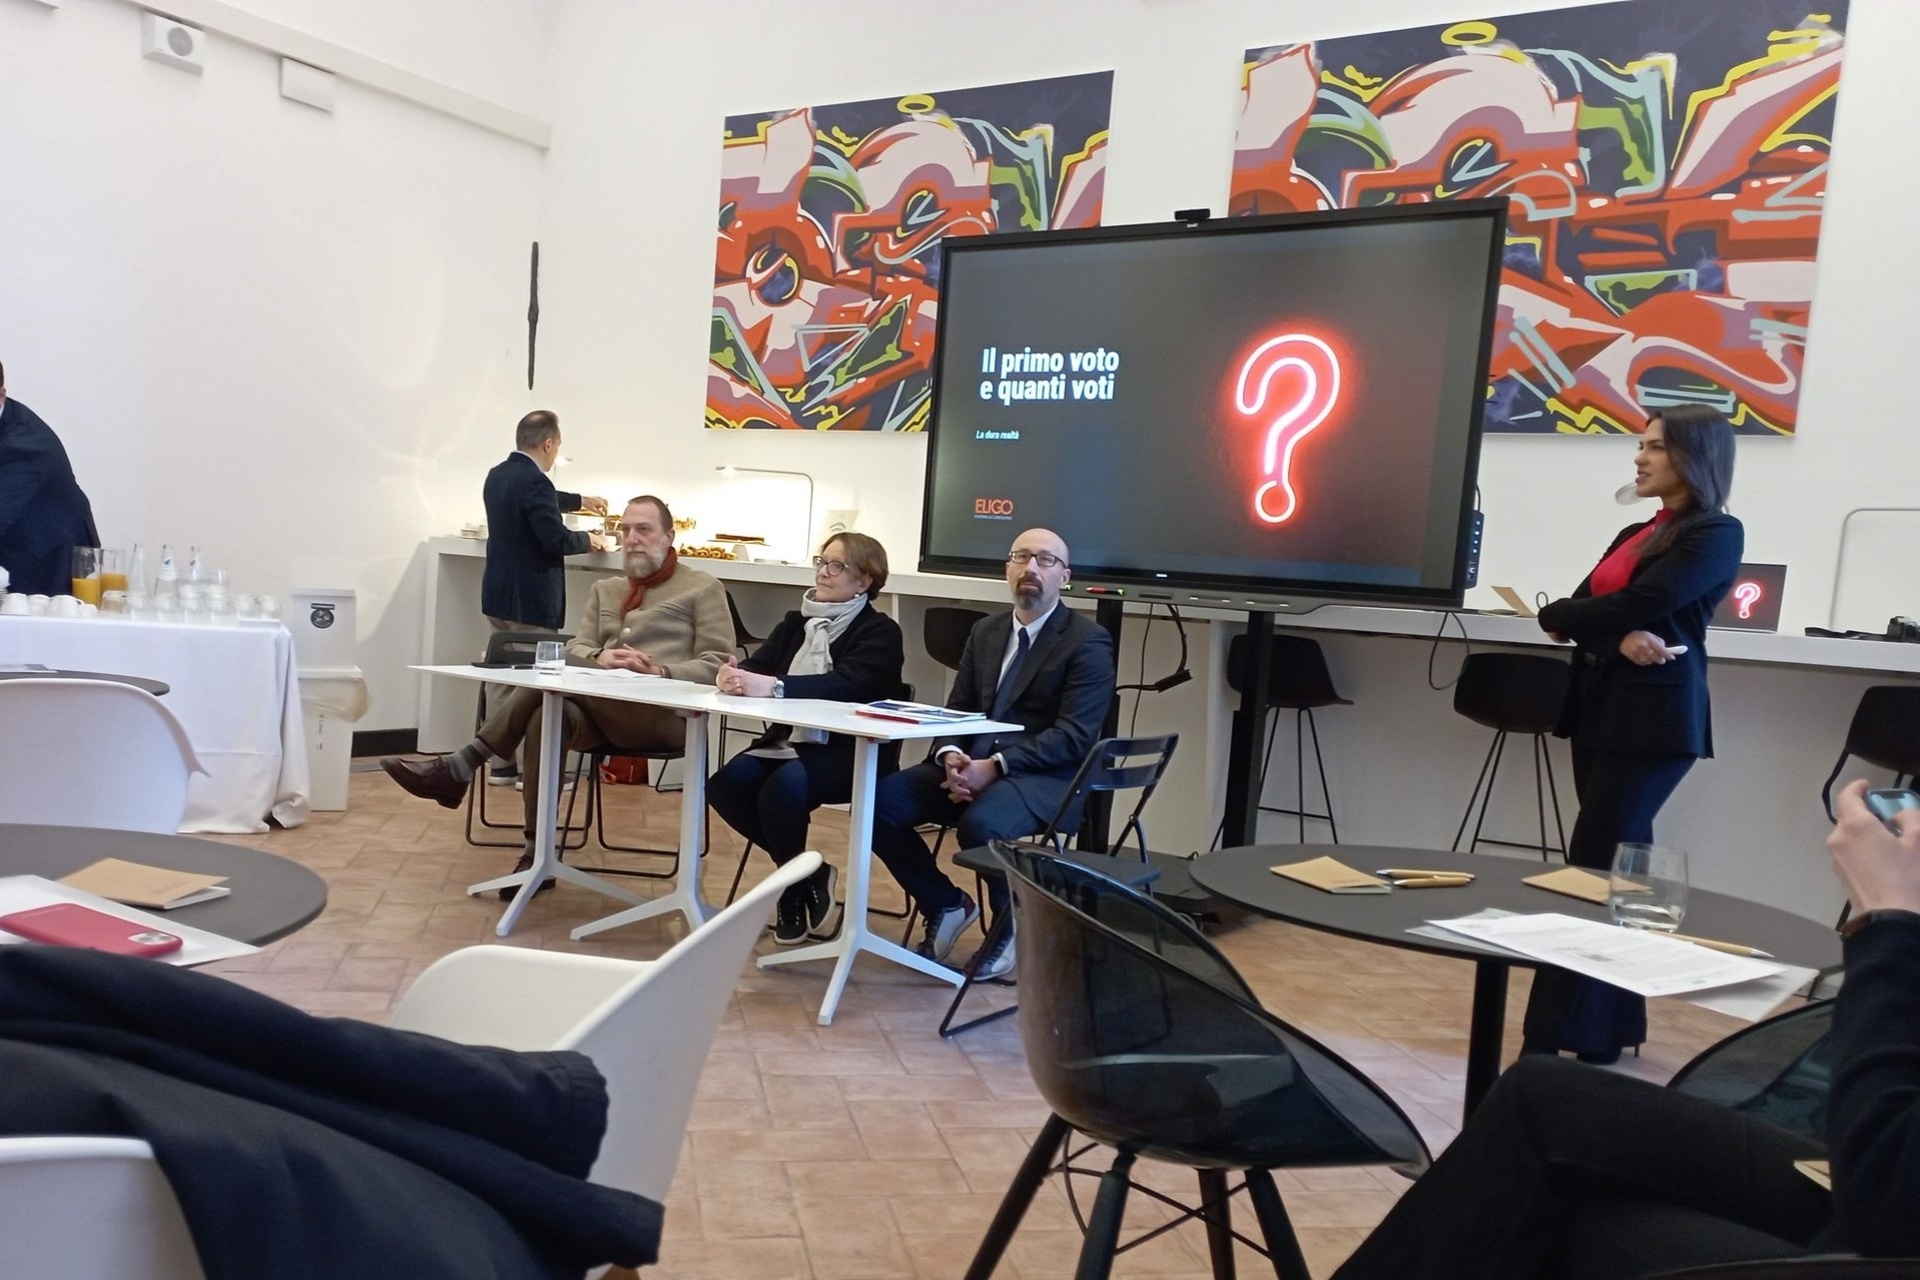 Eligo Next: la presentazione della nuova piattaforma di voto elettronico e online Eligo Next a Milano da parte di Irene Pugliatti, CEO della società